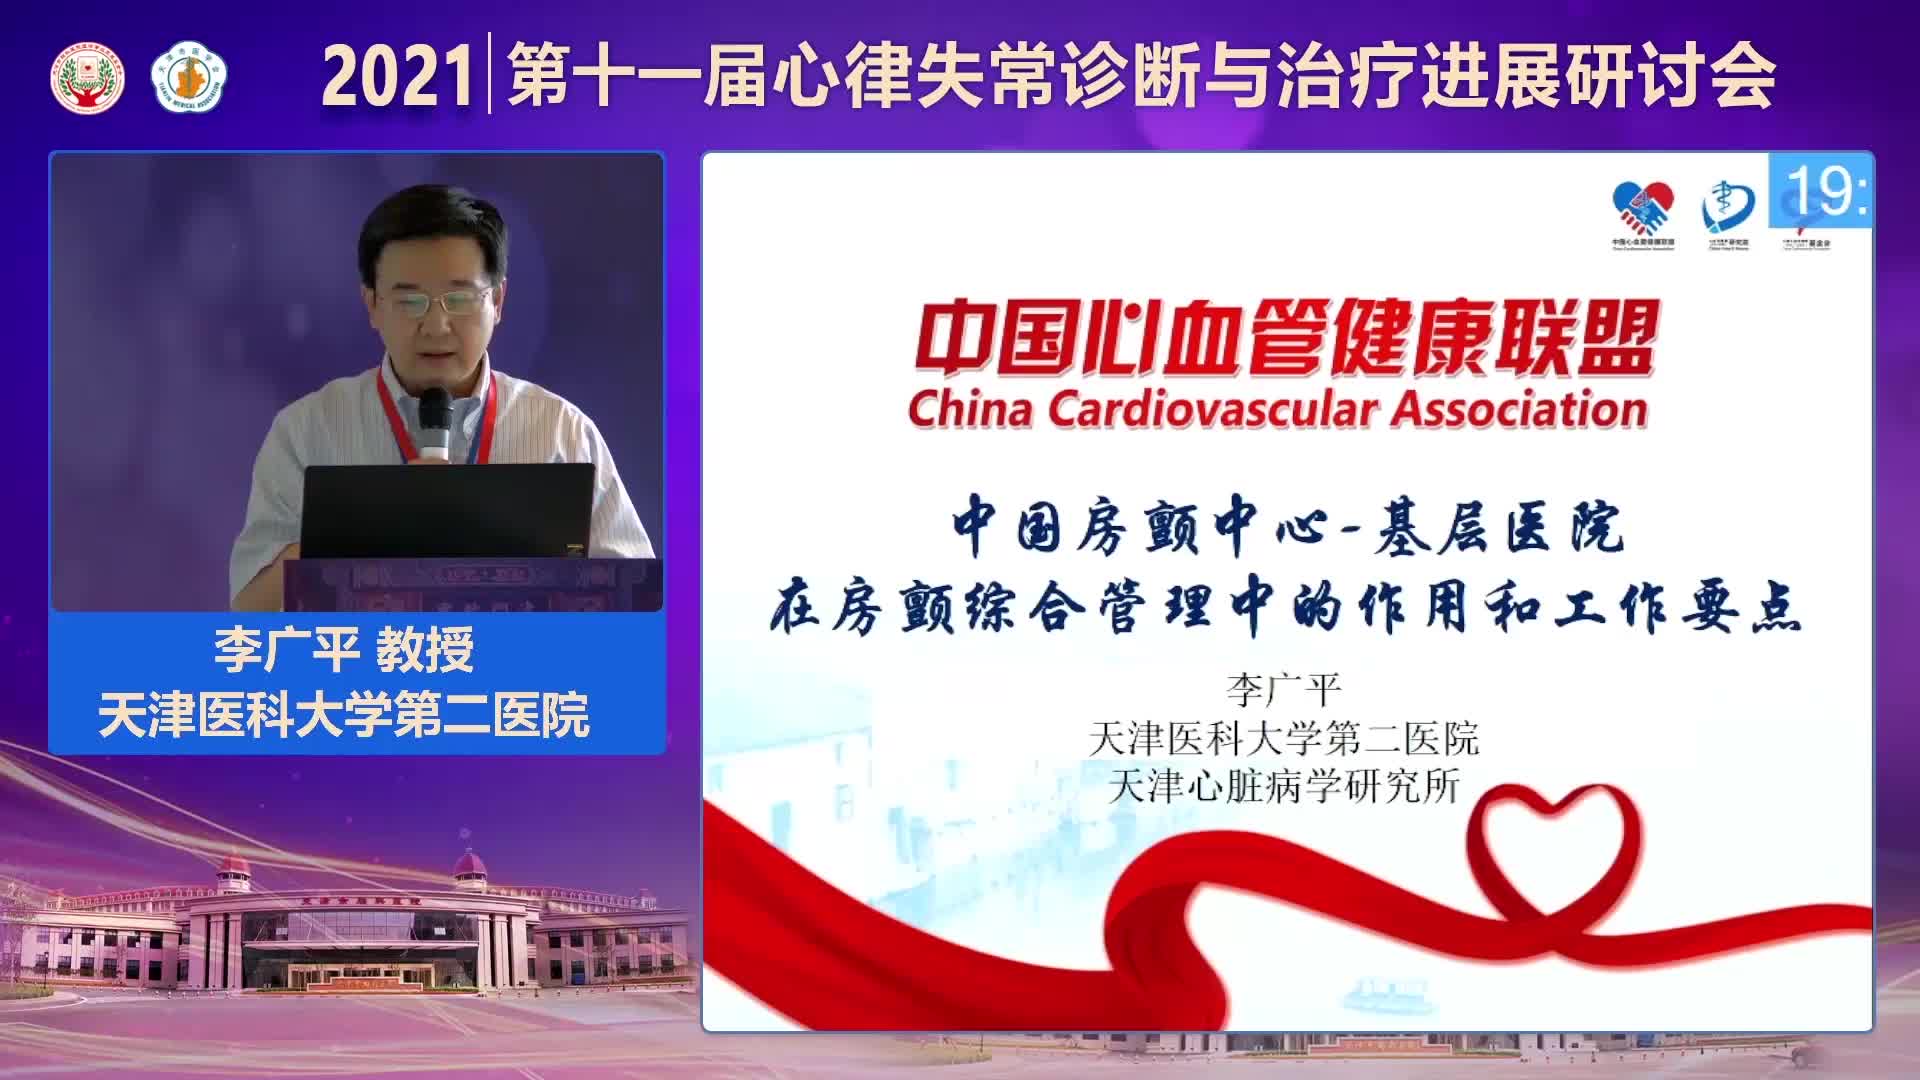 李广平-基层医院在房颤综合管理中的作用及工作重点